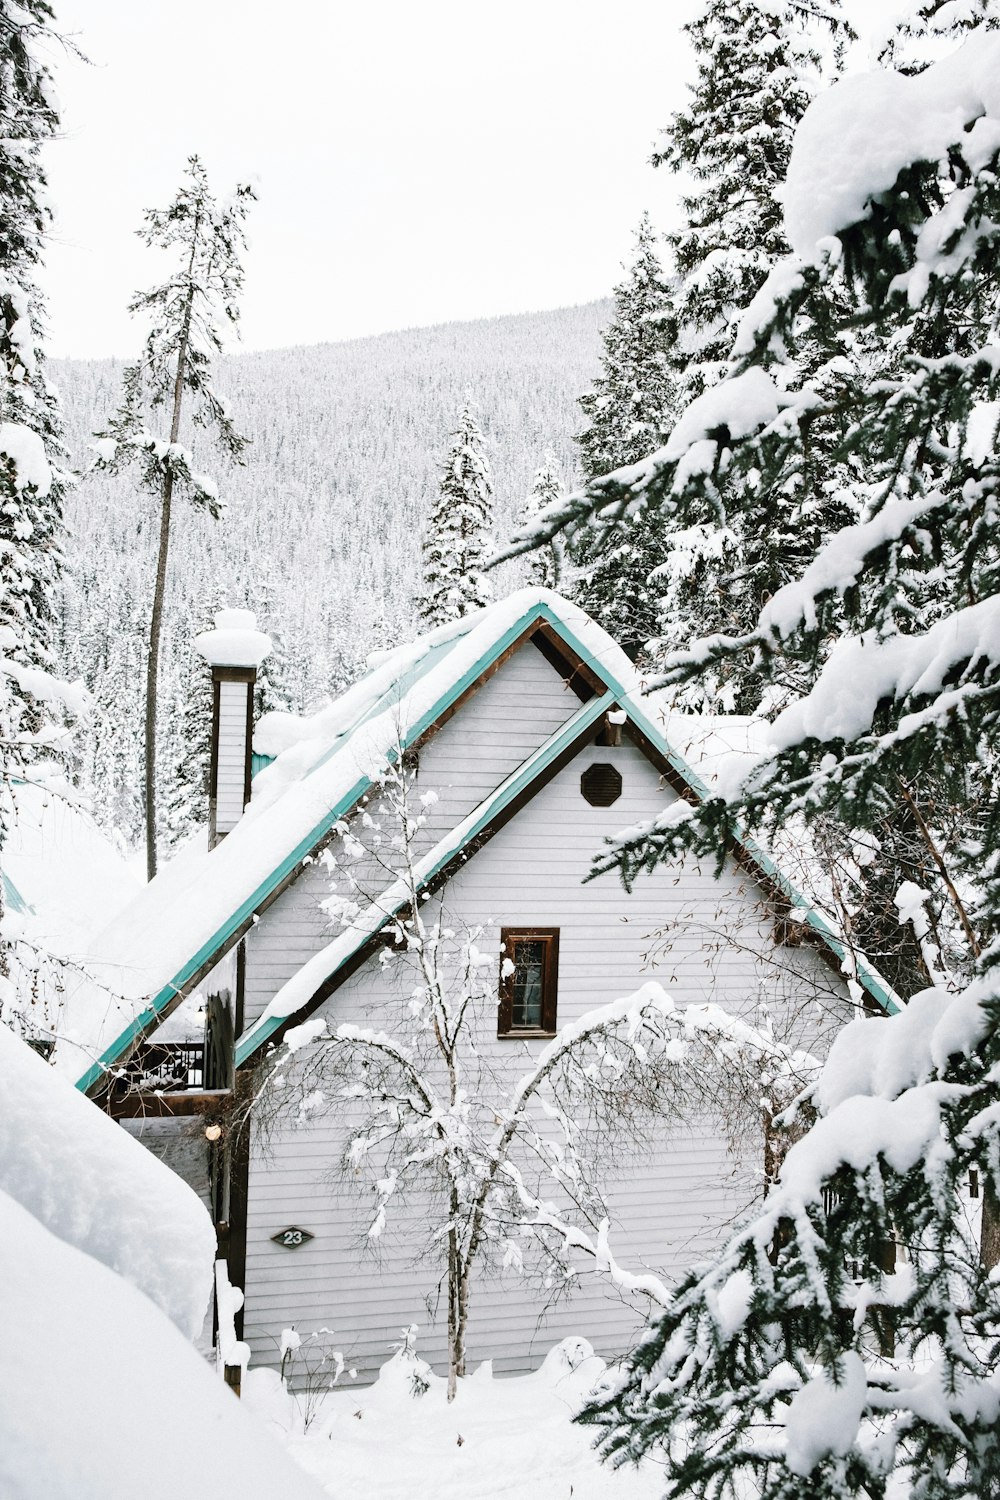 Casa blanca de madera cerca de árboles cubiertos de nieve